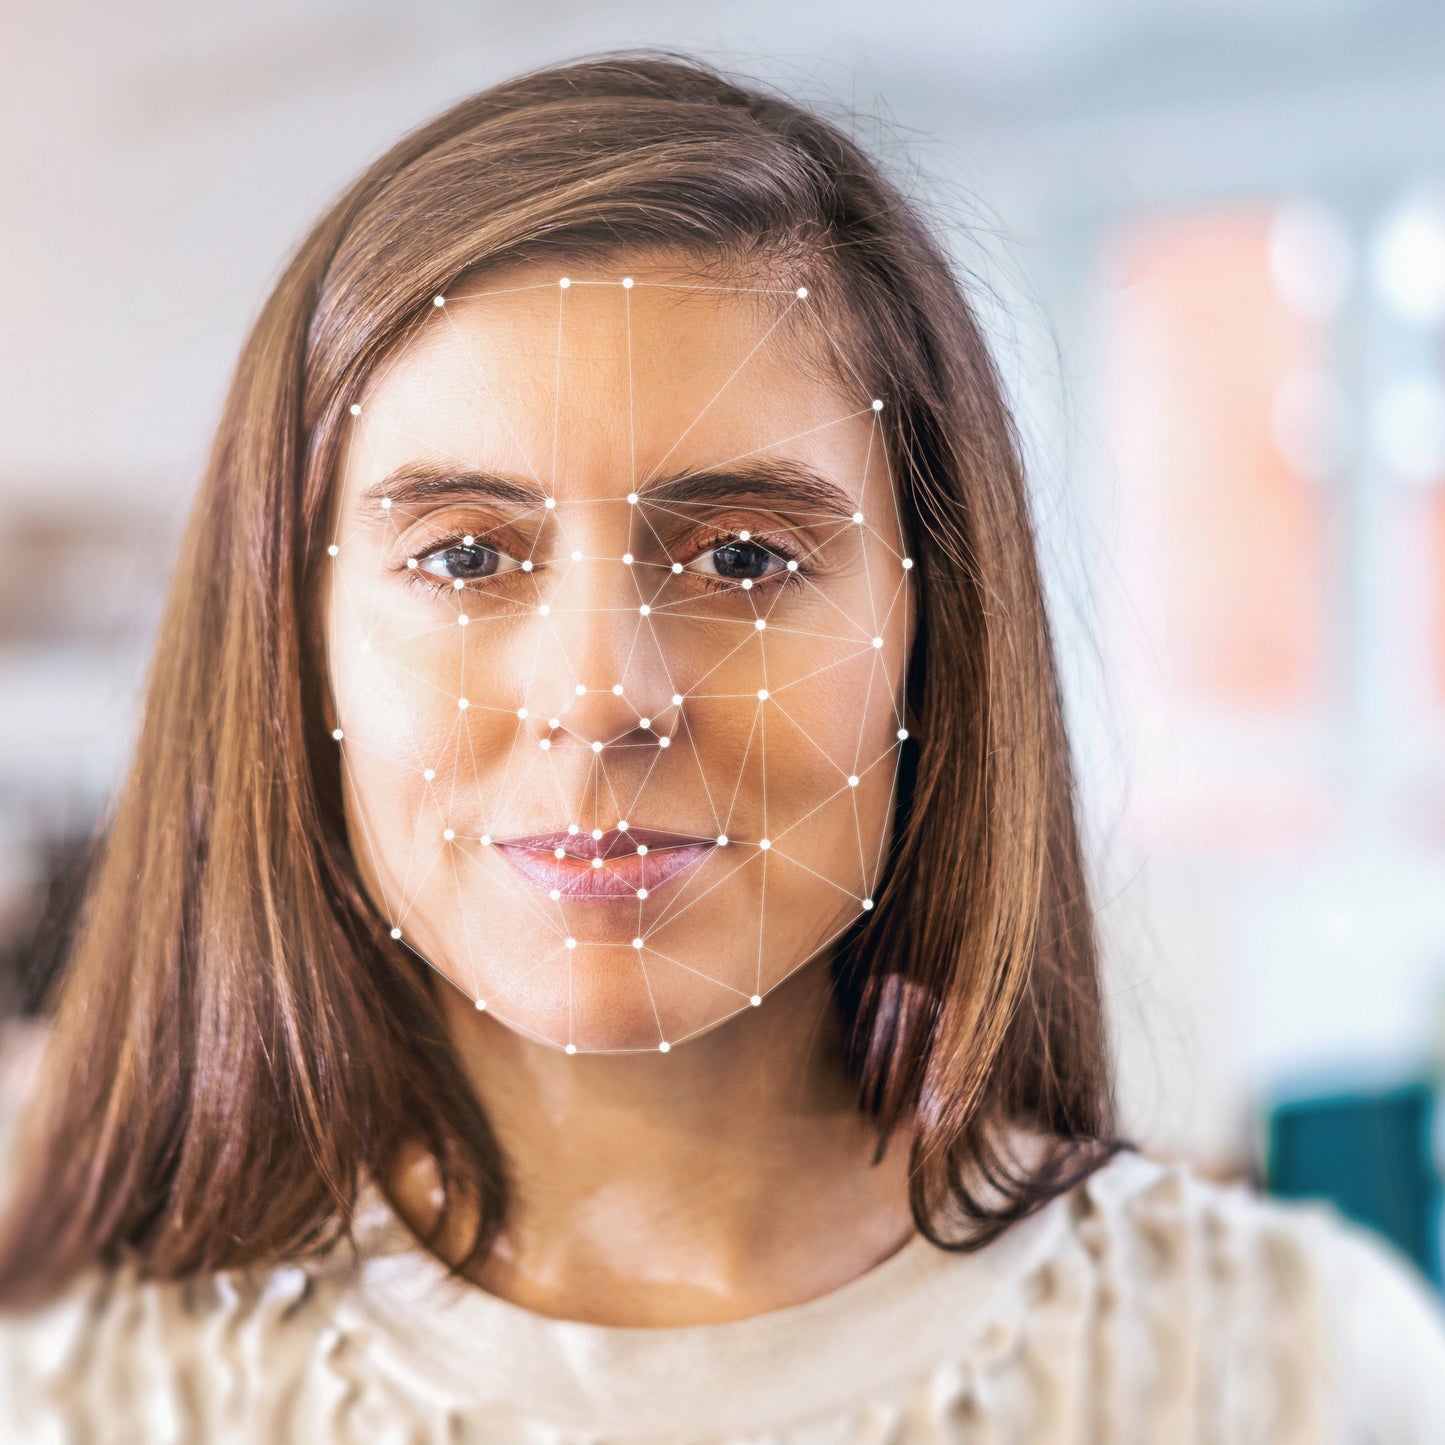 Personalausweis übersetzen lassen: Eine junge Frau mit biometrischem Netzmuster vor dem Gesicht